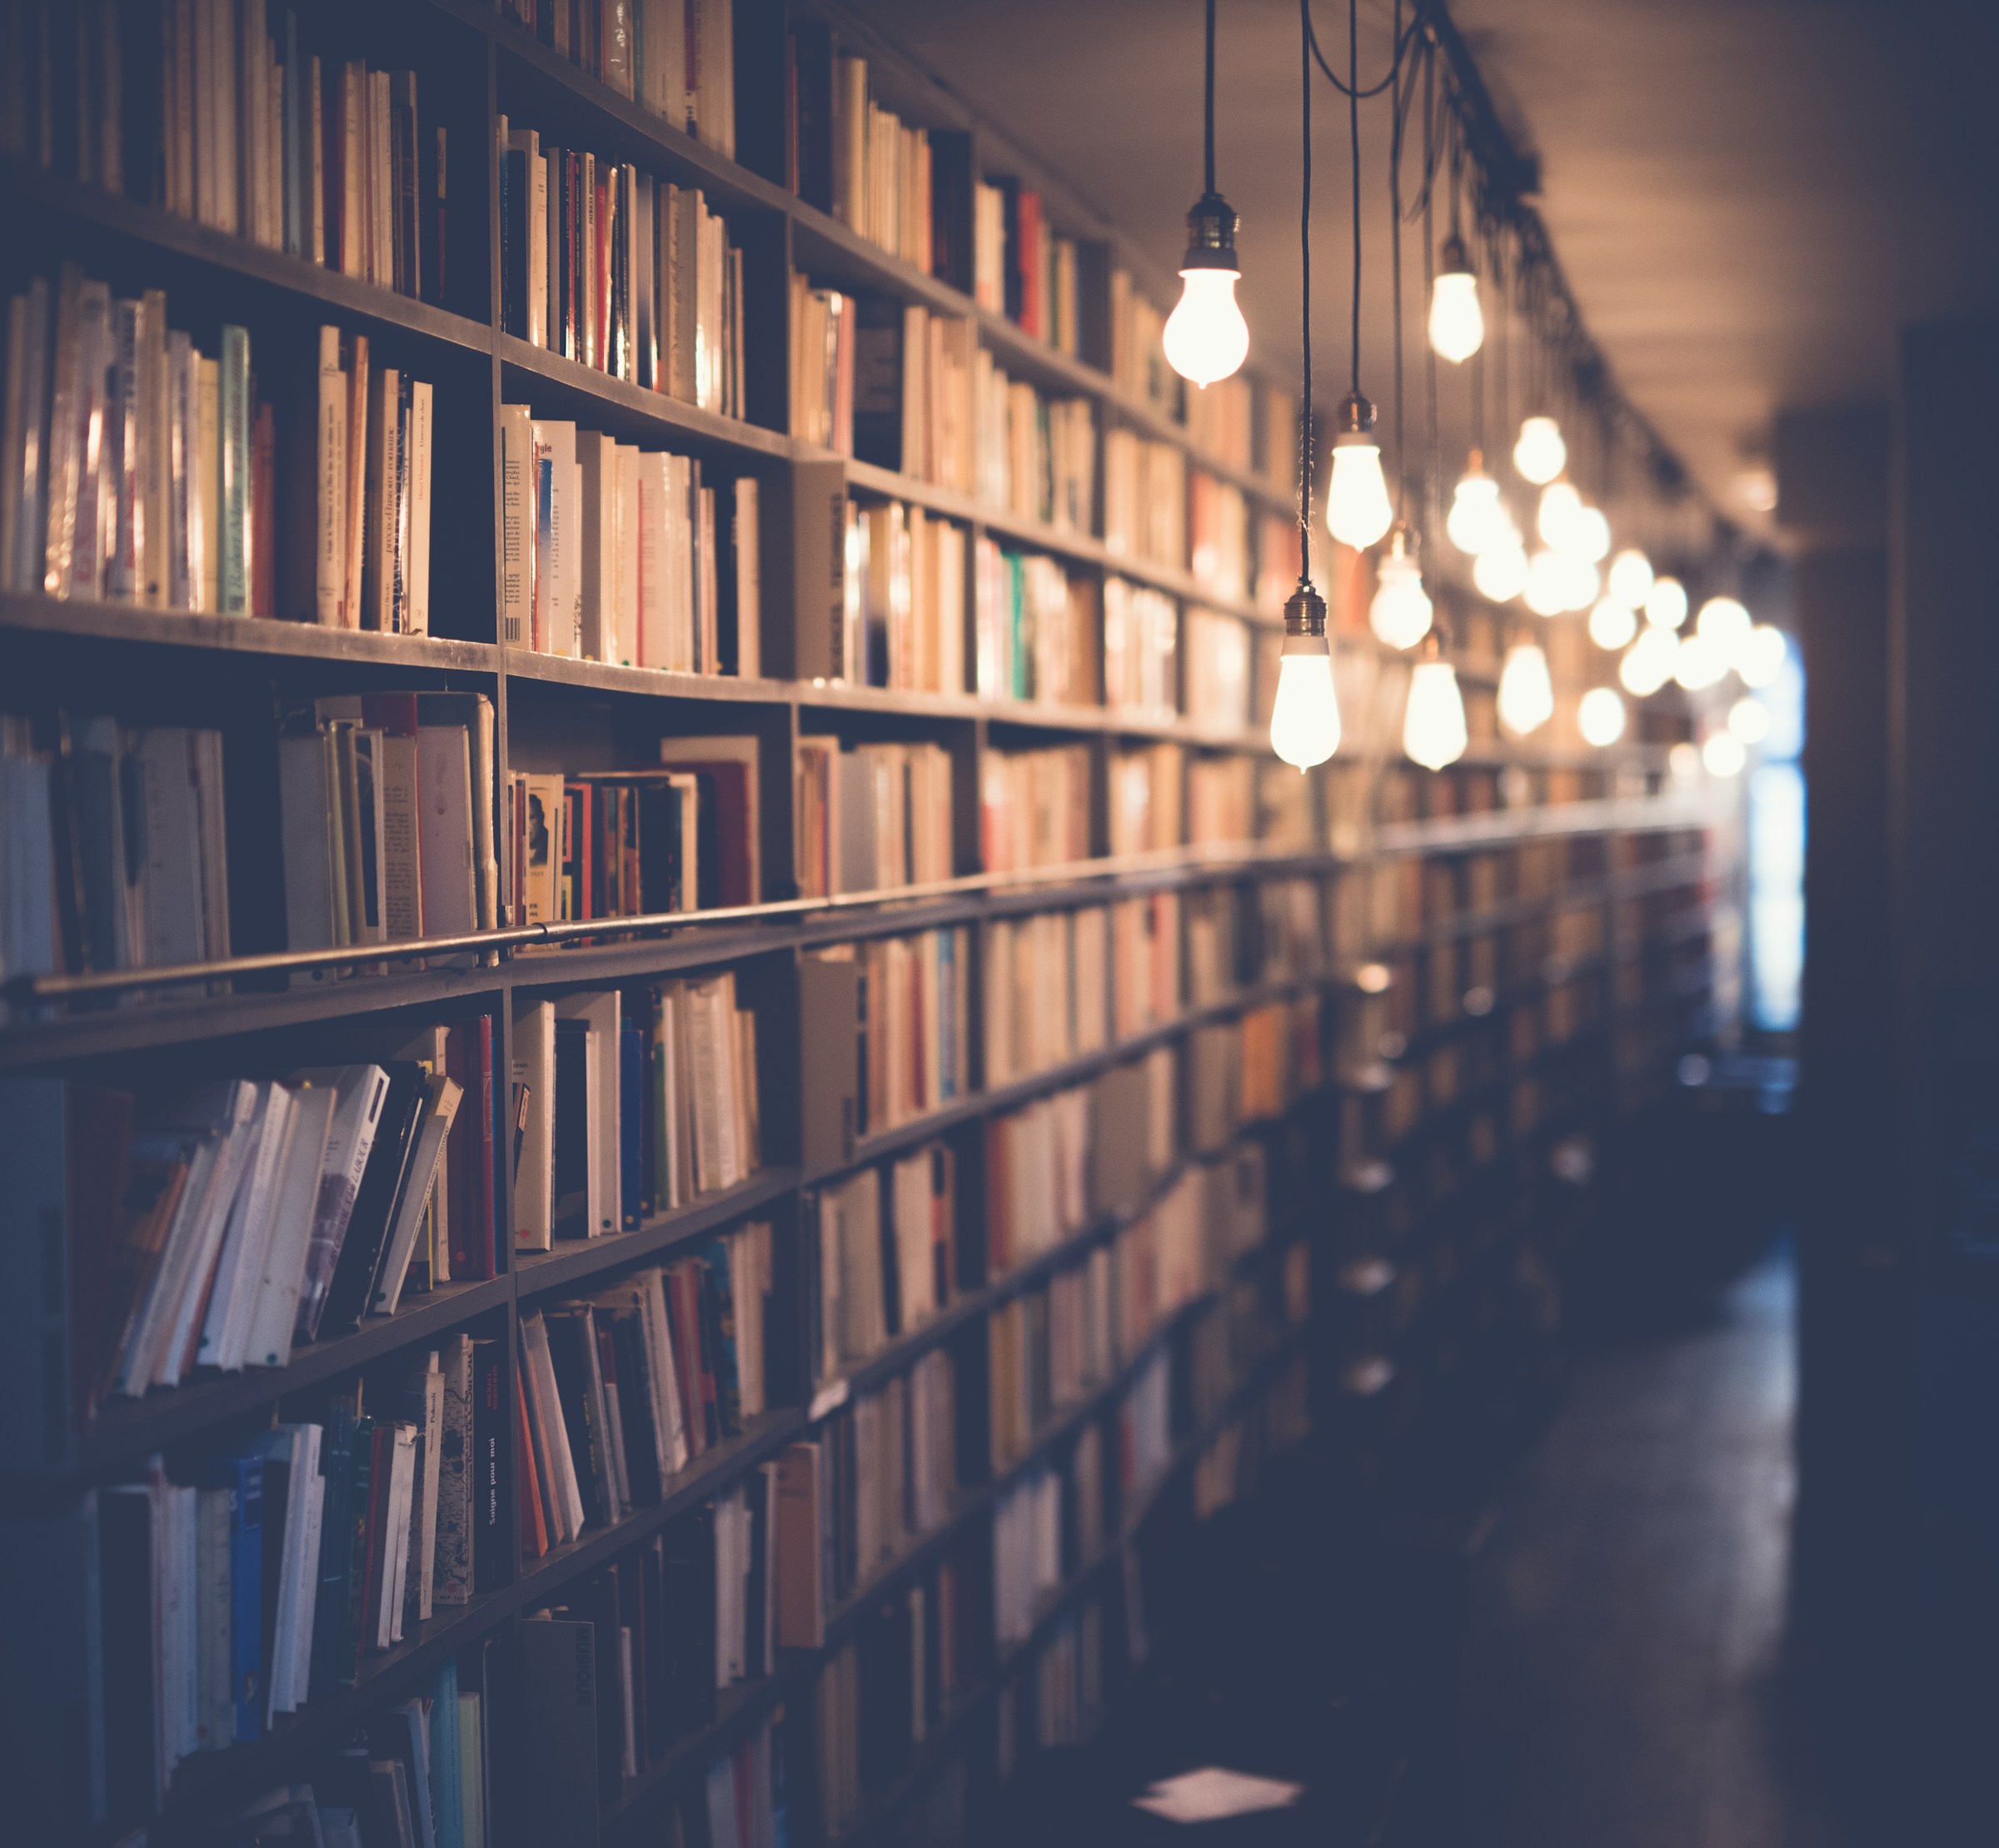 Eine Bibliothek mit hängenden Glühbirnen | Quelle: Unsplash